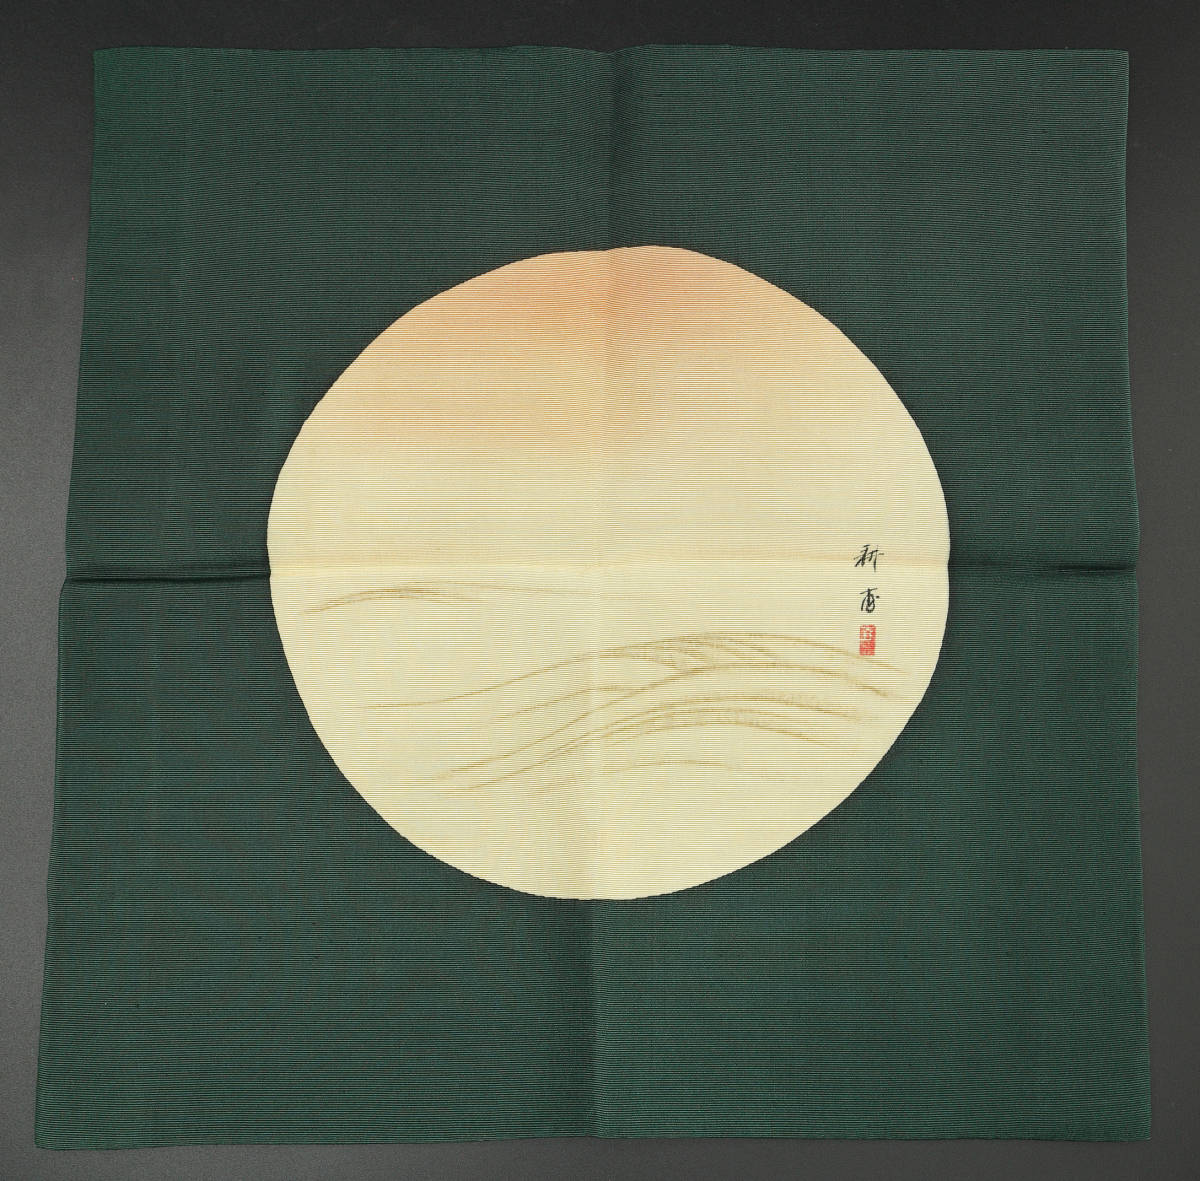 [.] чайная посуда .. сверху рисовое поле ... asahi волна map весна море магазин ..... одежда . пакет . asahi день утро день день. . "солнечный круг" .. Новый год праздник ... Хара .. зеленый цвет старый .